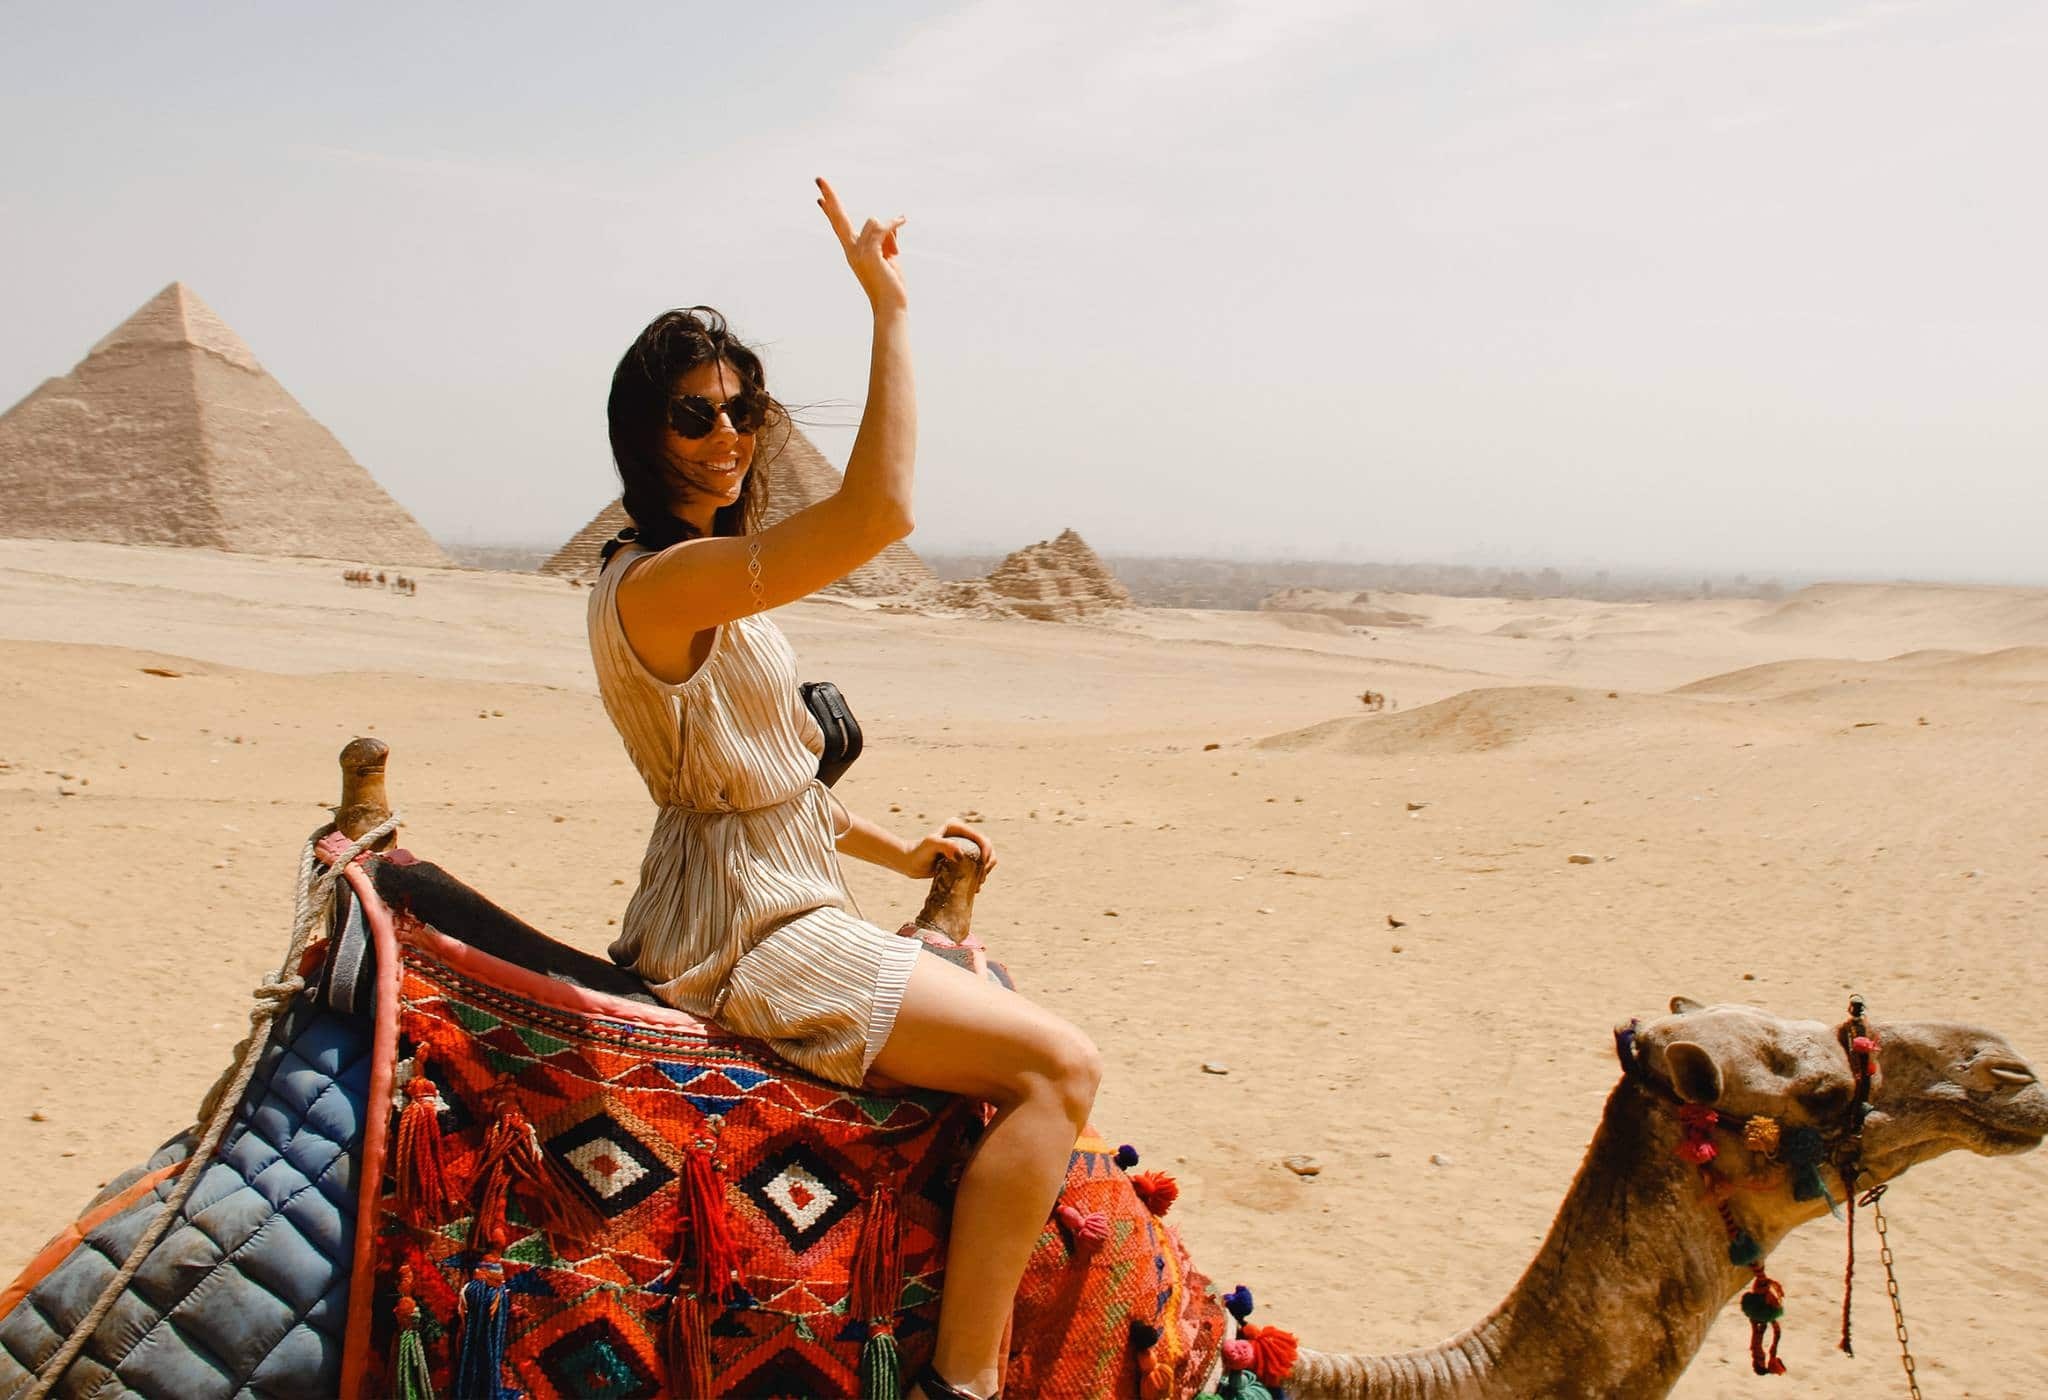 πακέτα διακοπών στην Αίγυπτο | πακέτα περιηγήσεων στην Αίγυπτο | Πακέτα ταξιδιών της Αιγύπτου |